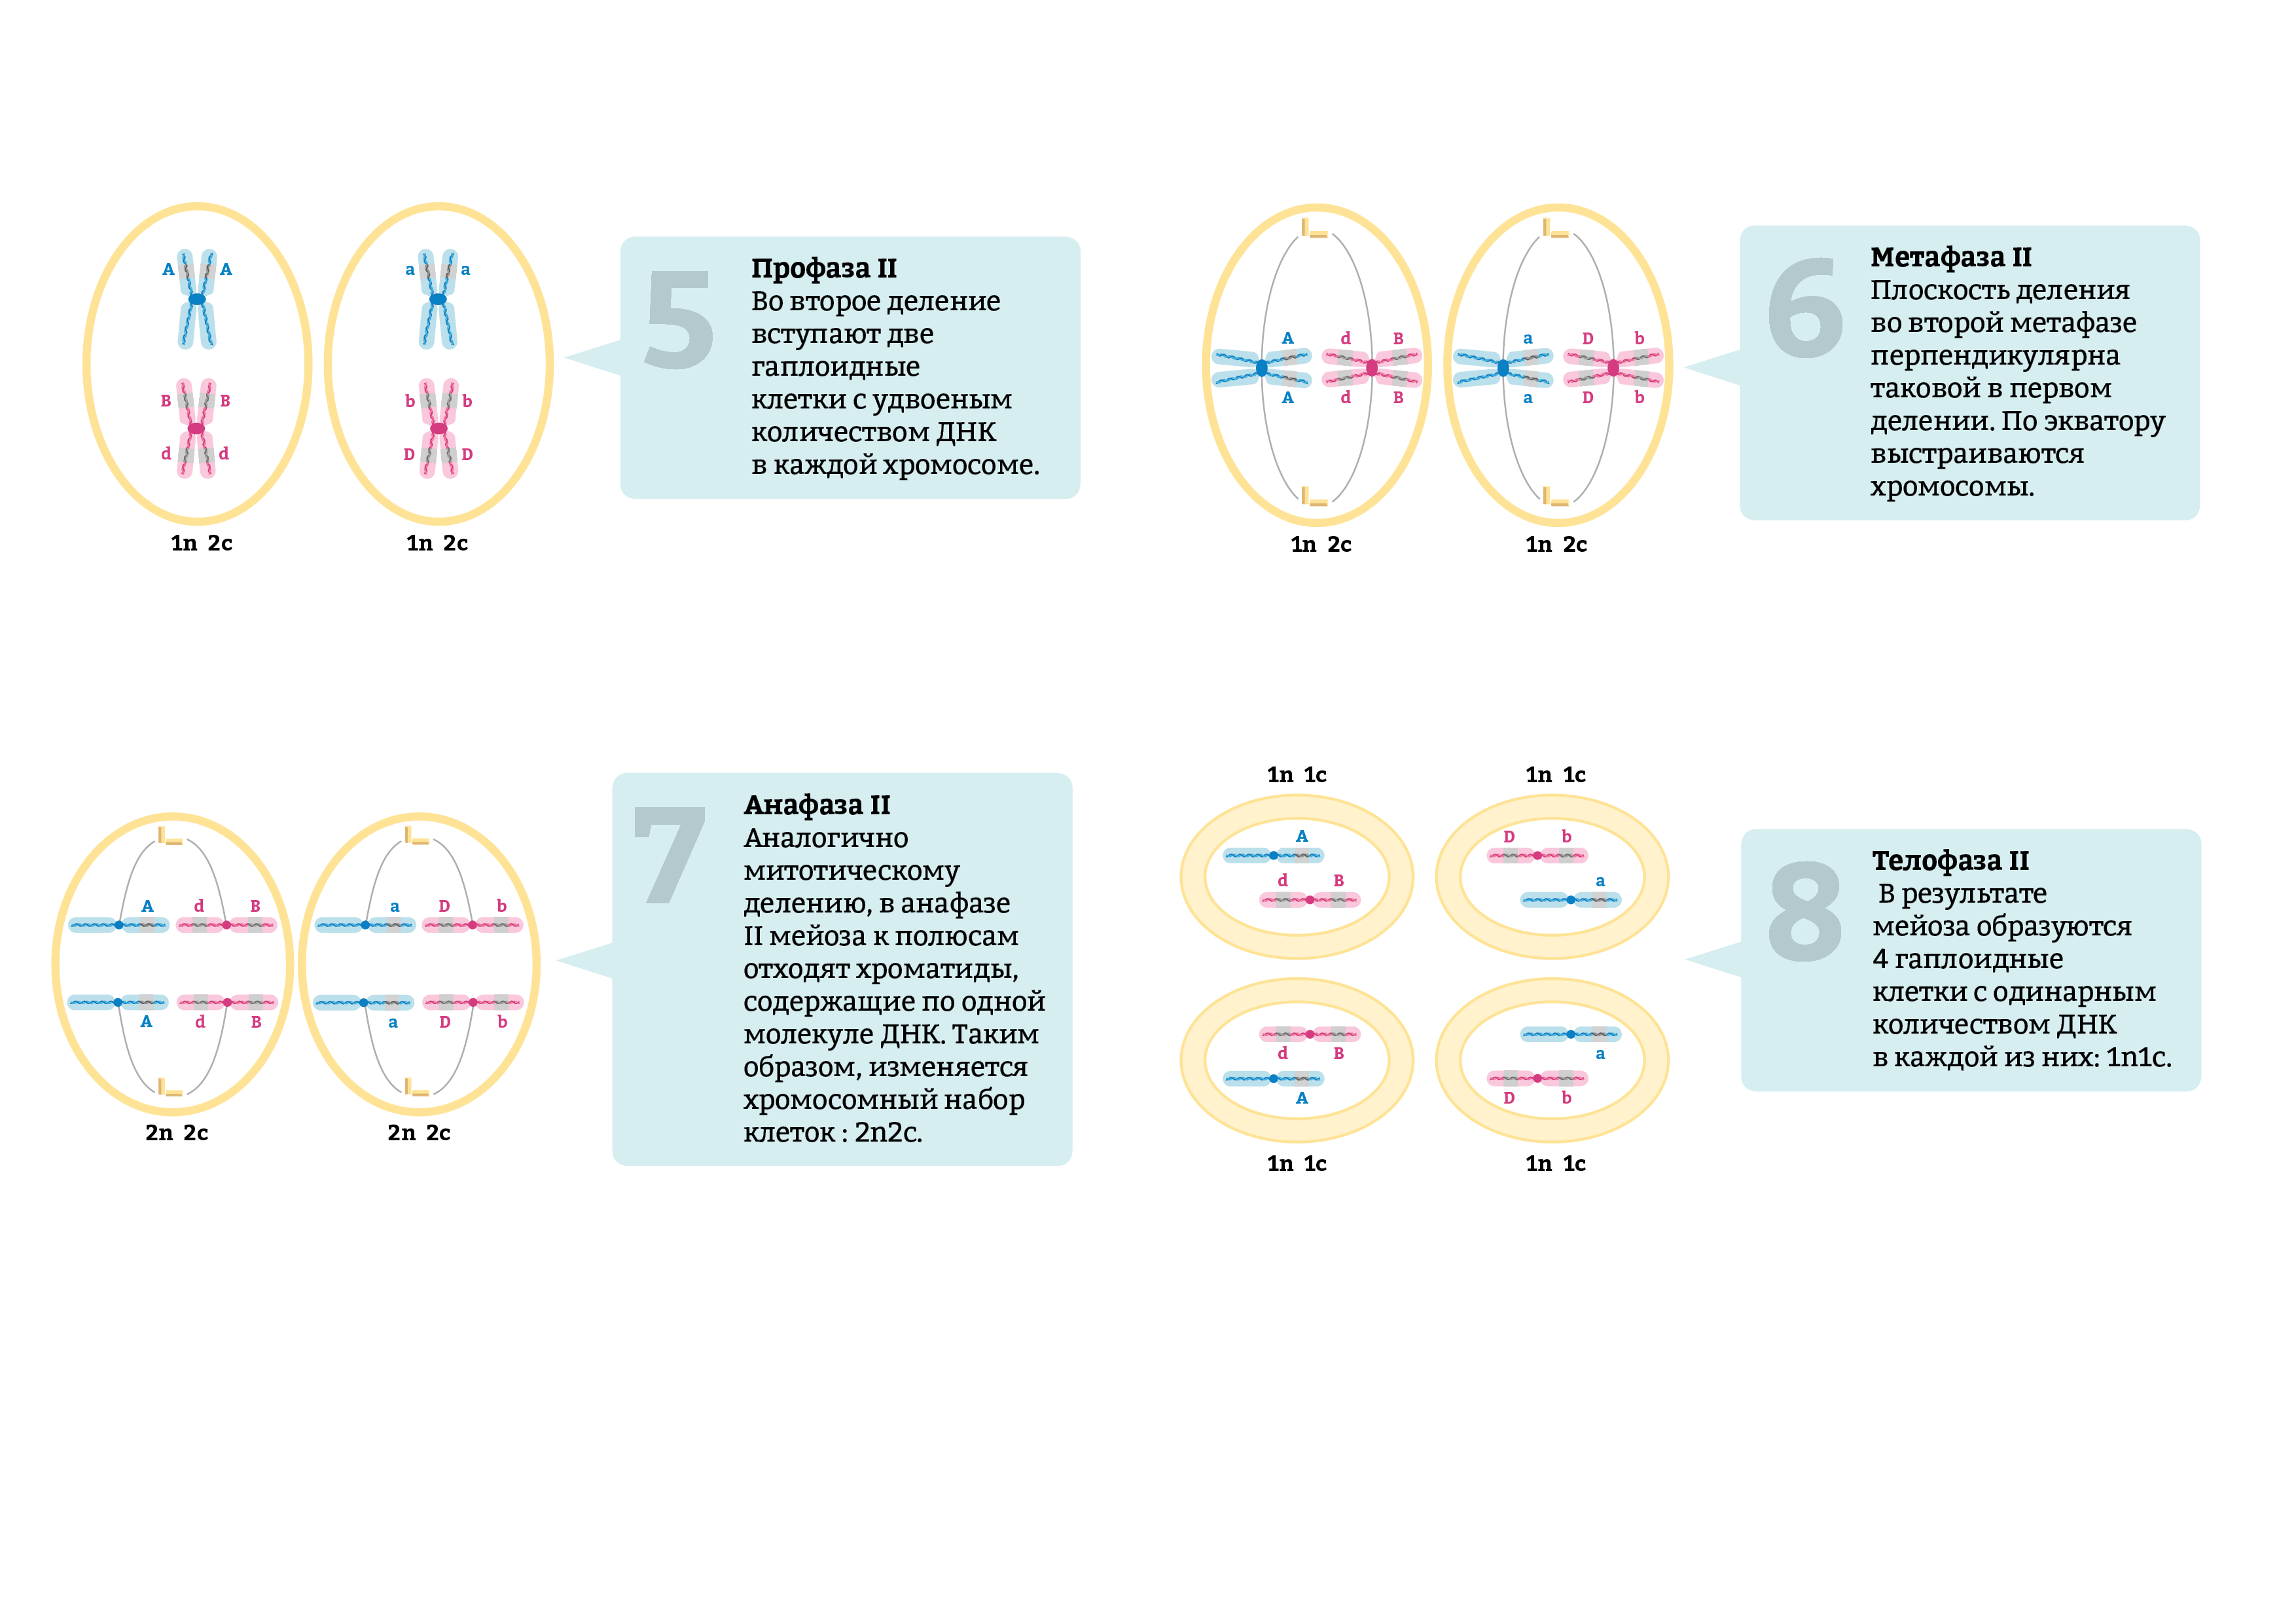 Хромосомы двухроматидные в какой фазе мейоза. Мейоз фазы таблица набор хромосом. Метафаза 2 мейоза набор хромосом. Первое деление мейоза набор хромосом. Набор хромосом в дочерней клетке мейоза 1.